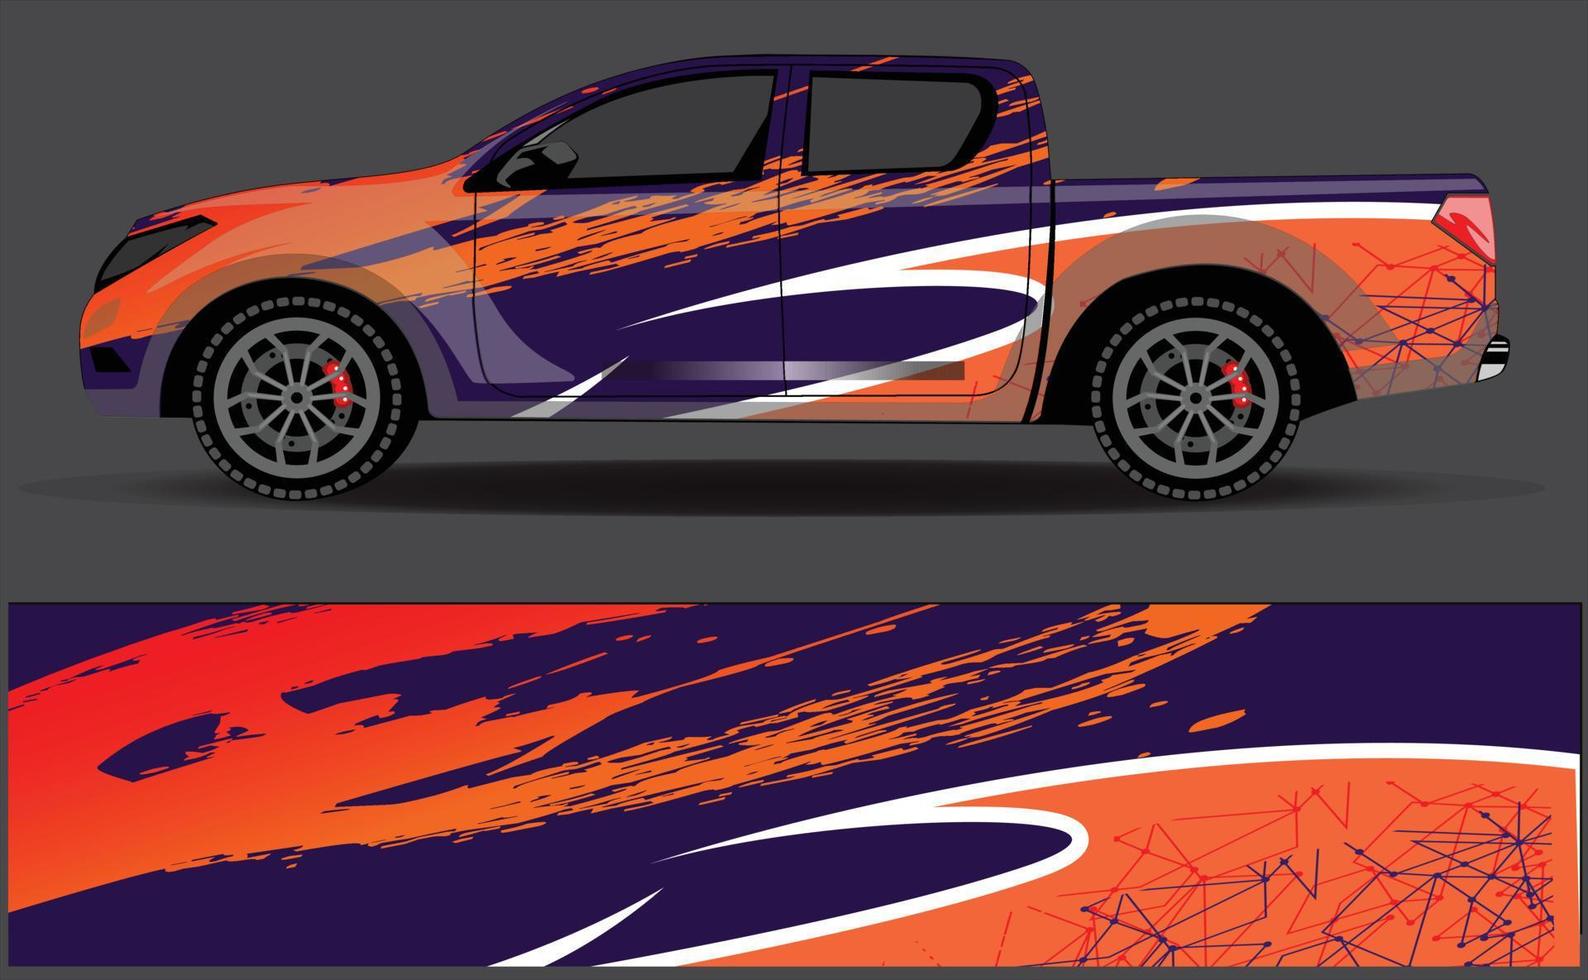 grafische abstrakte Streifen-Rennhintergrunddesigns für Fahrzeug-Rallye-Rennabenteuer und Autorennen-Lackierung vektor